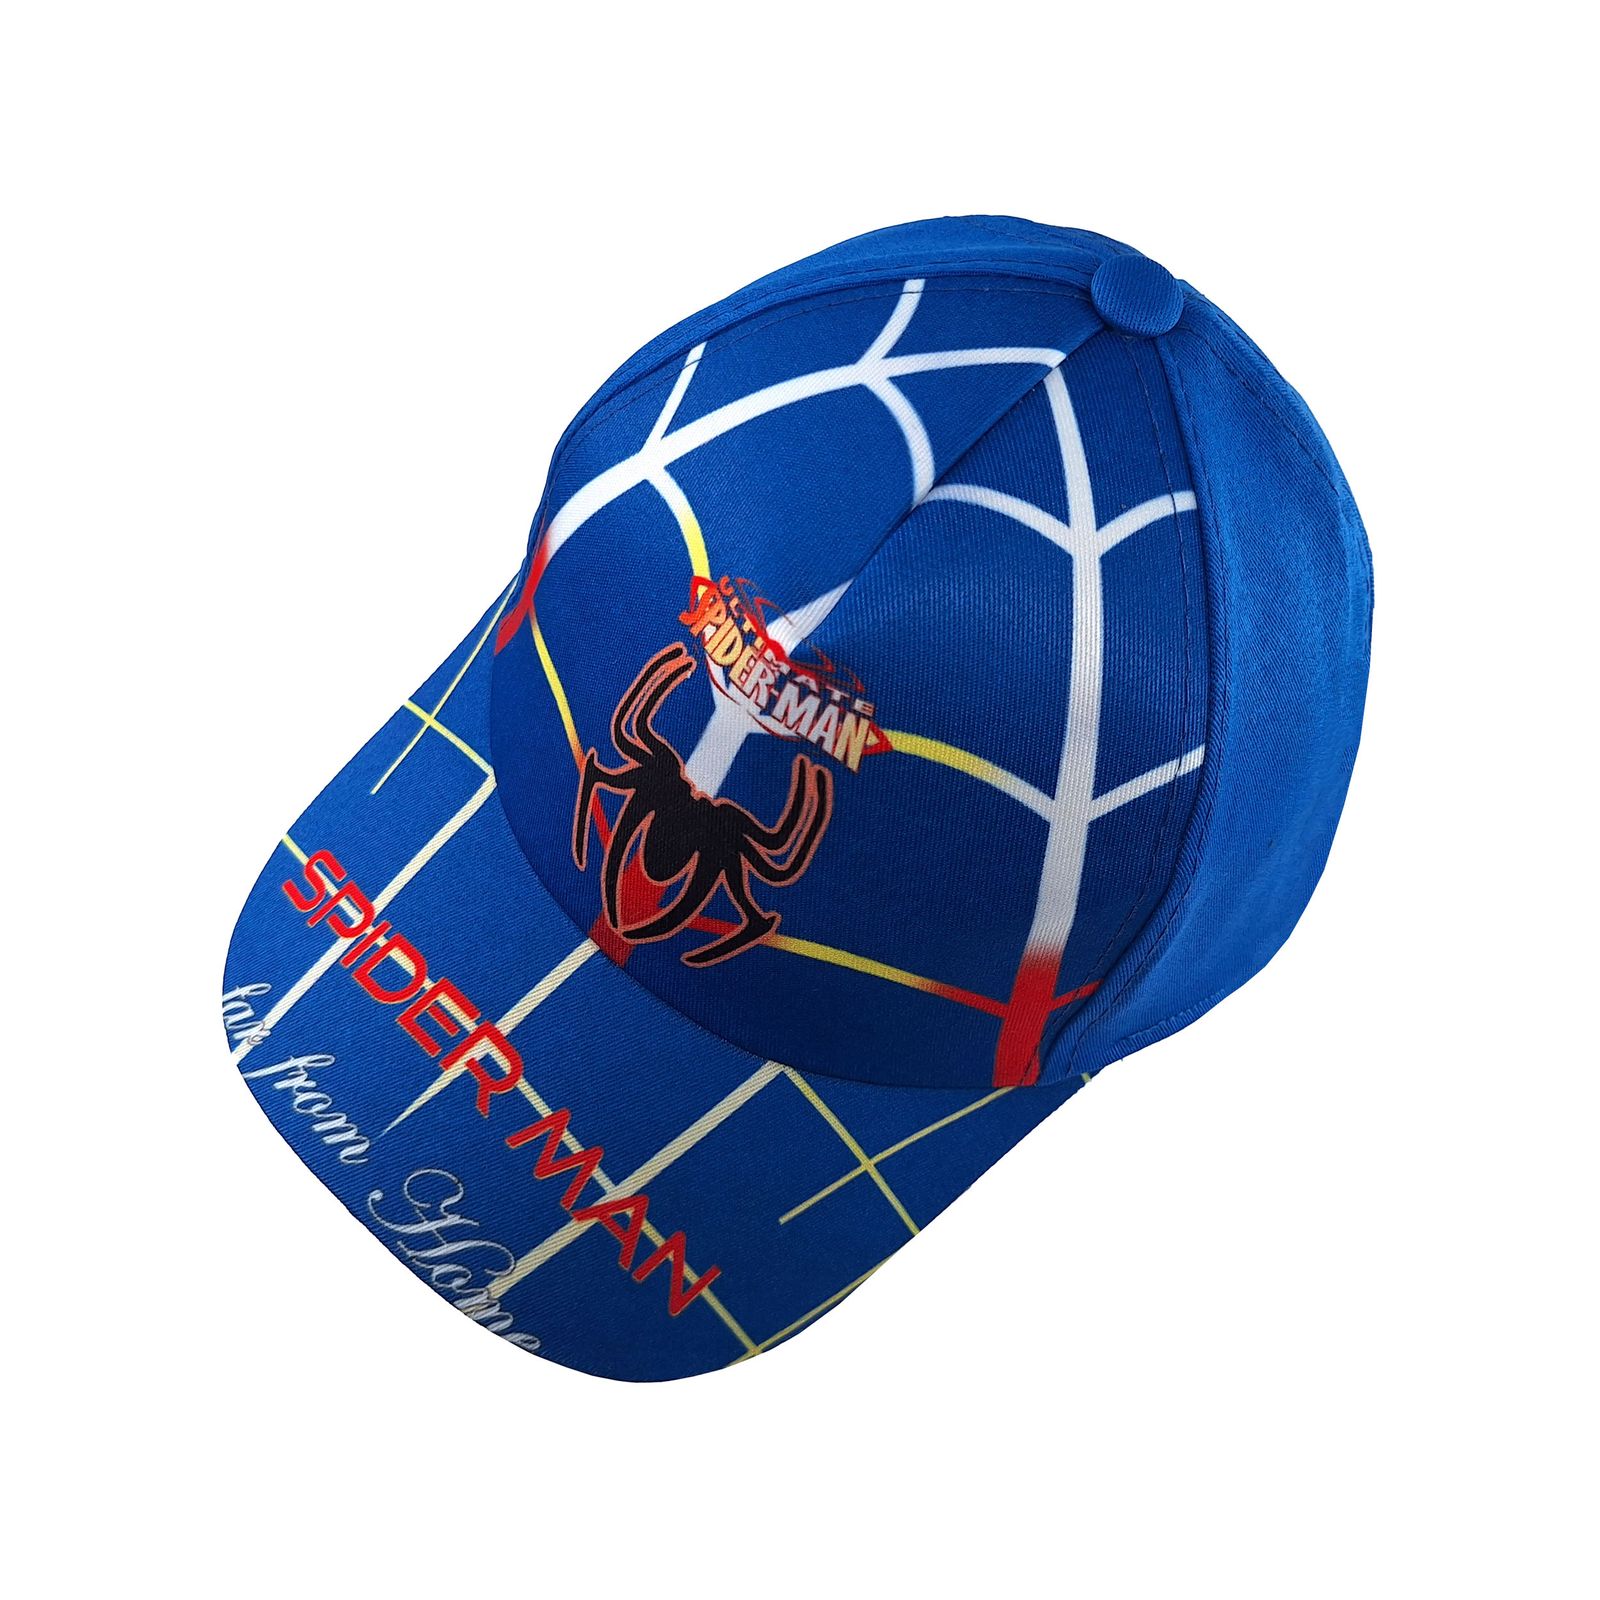  کلاه کپ پسرانه مدل مرد عنکبوتی کد 1132 رنگ آبی -  - 1